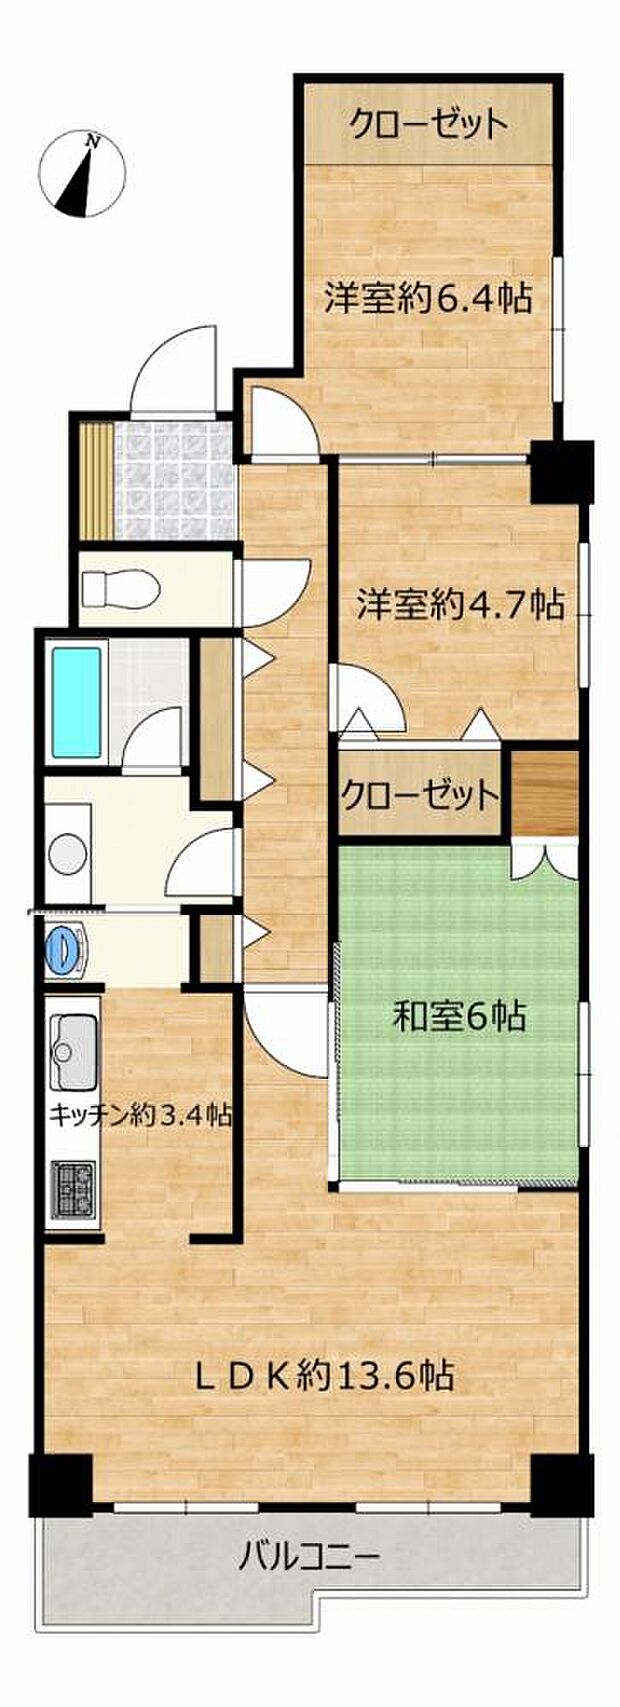 【間取図】3LDKで81.32平米のマンションです。各居室自然採光で収納付きです。回遊動線のある間取りなので家事の効率が高まります。